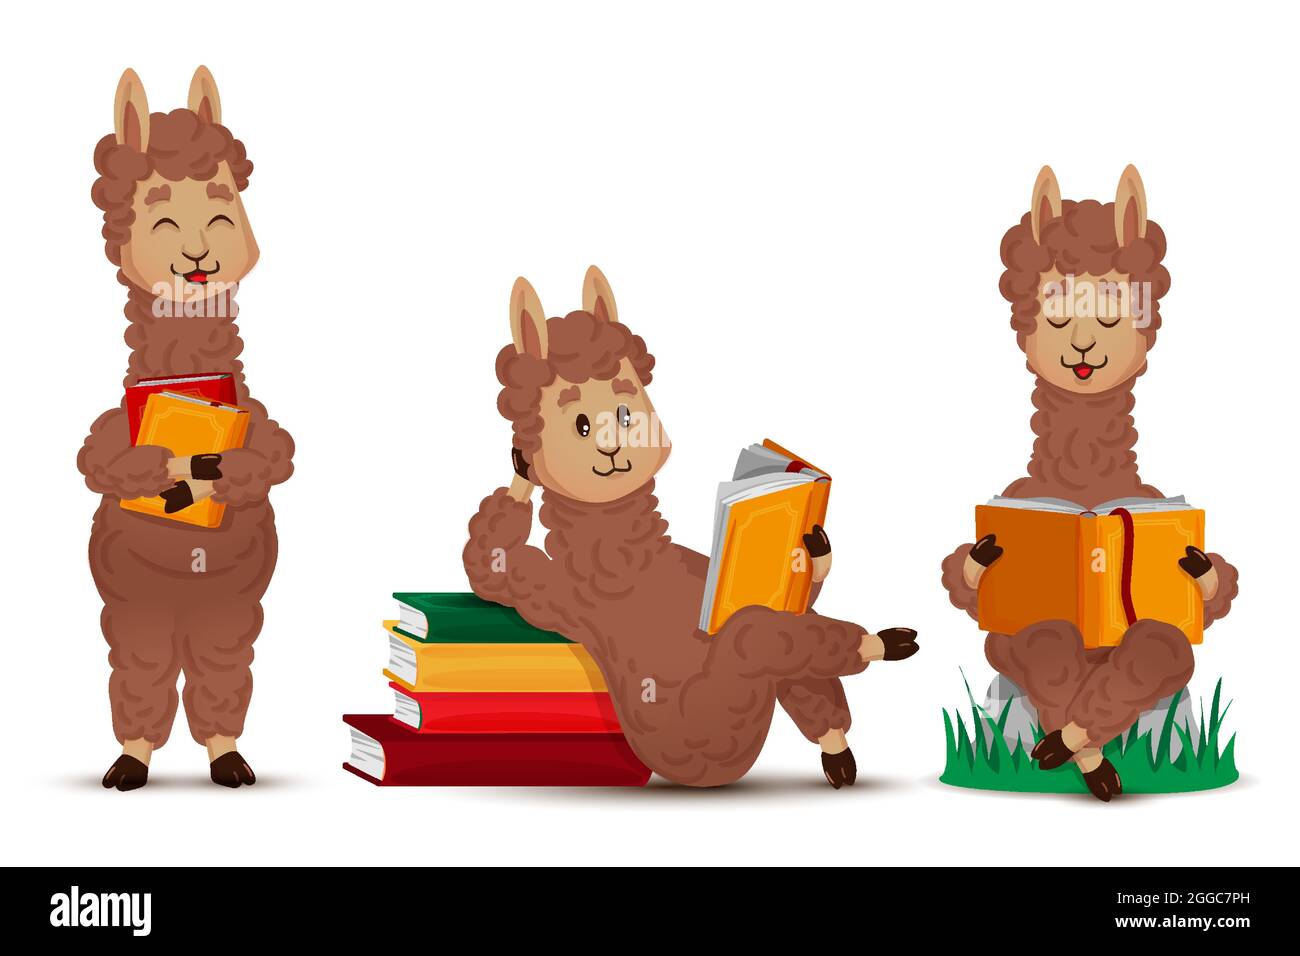 Llama alpaca lit un livre, un ensemble de figures animales isolées. Illustration vectorielle en dessin animé, style plat Illustration de Vecteur